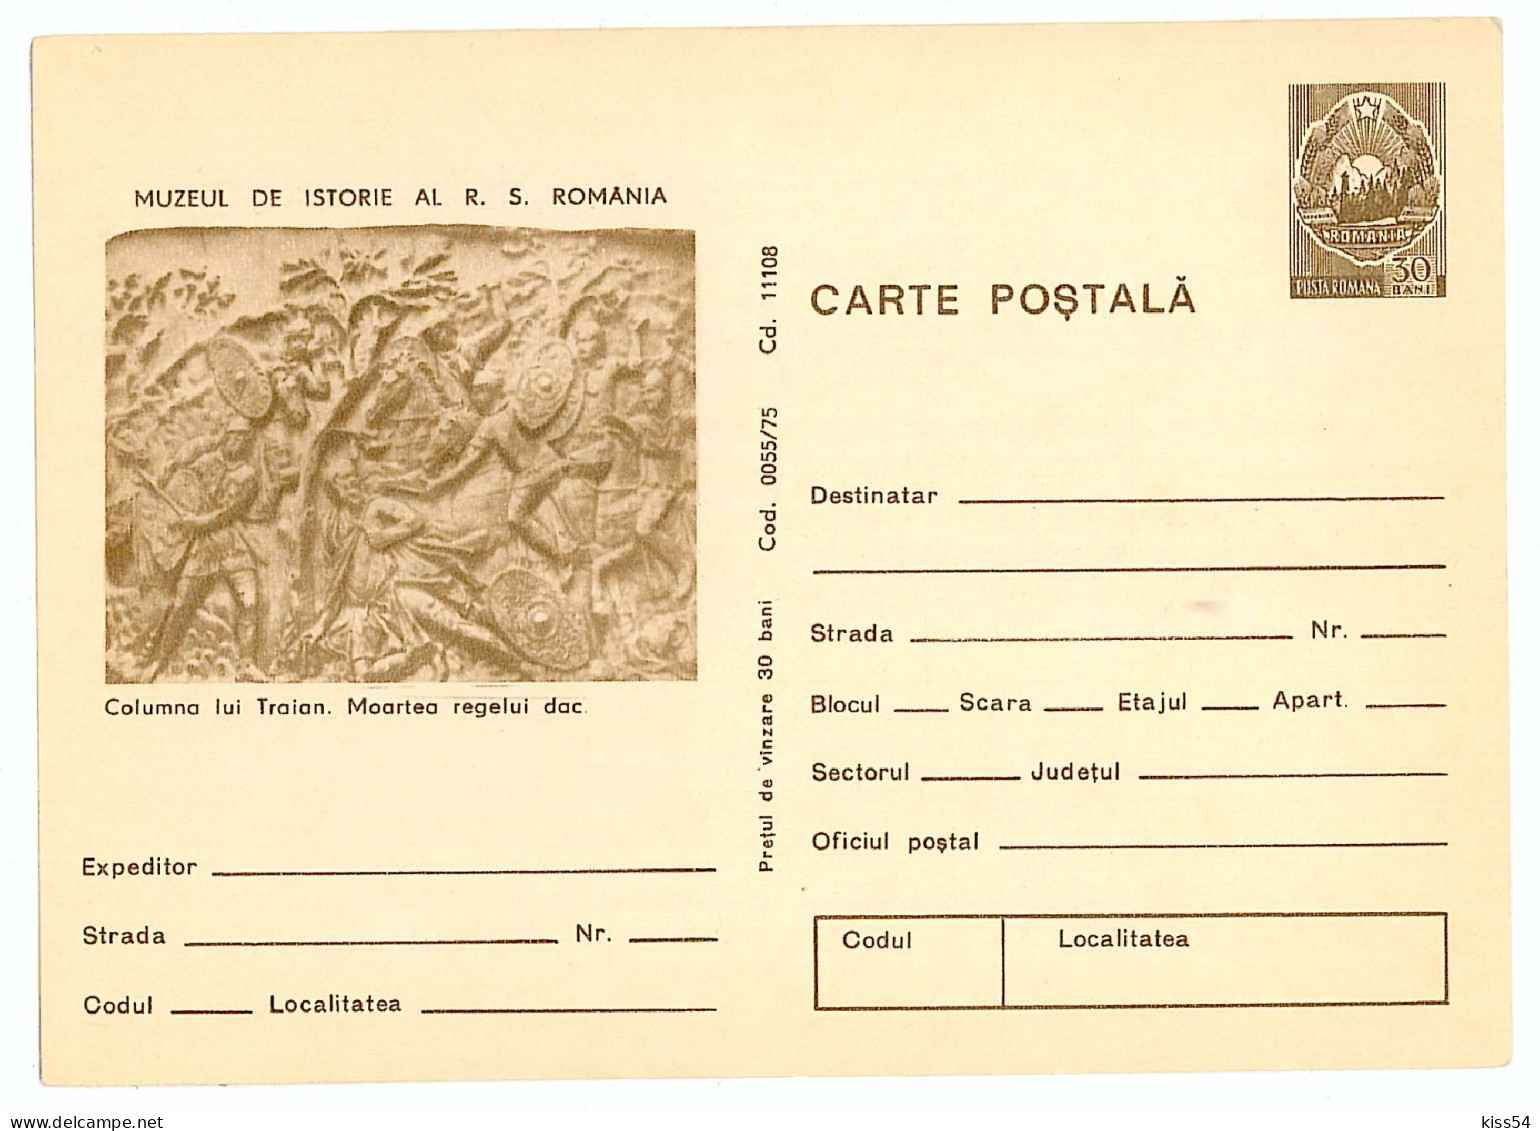 IP 75 - 55 ROME, Trajan's Column, Romania - Stationery - Unused - 1975 - Postal Stationery